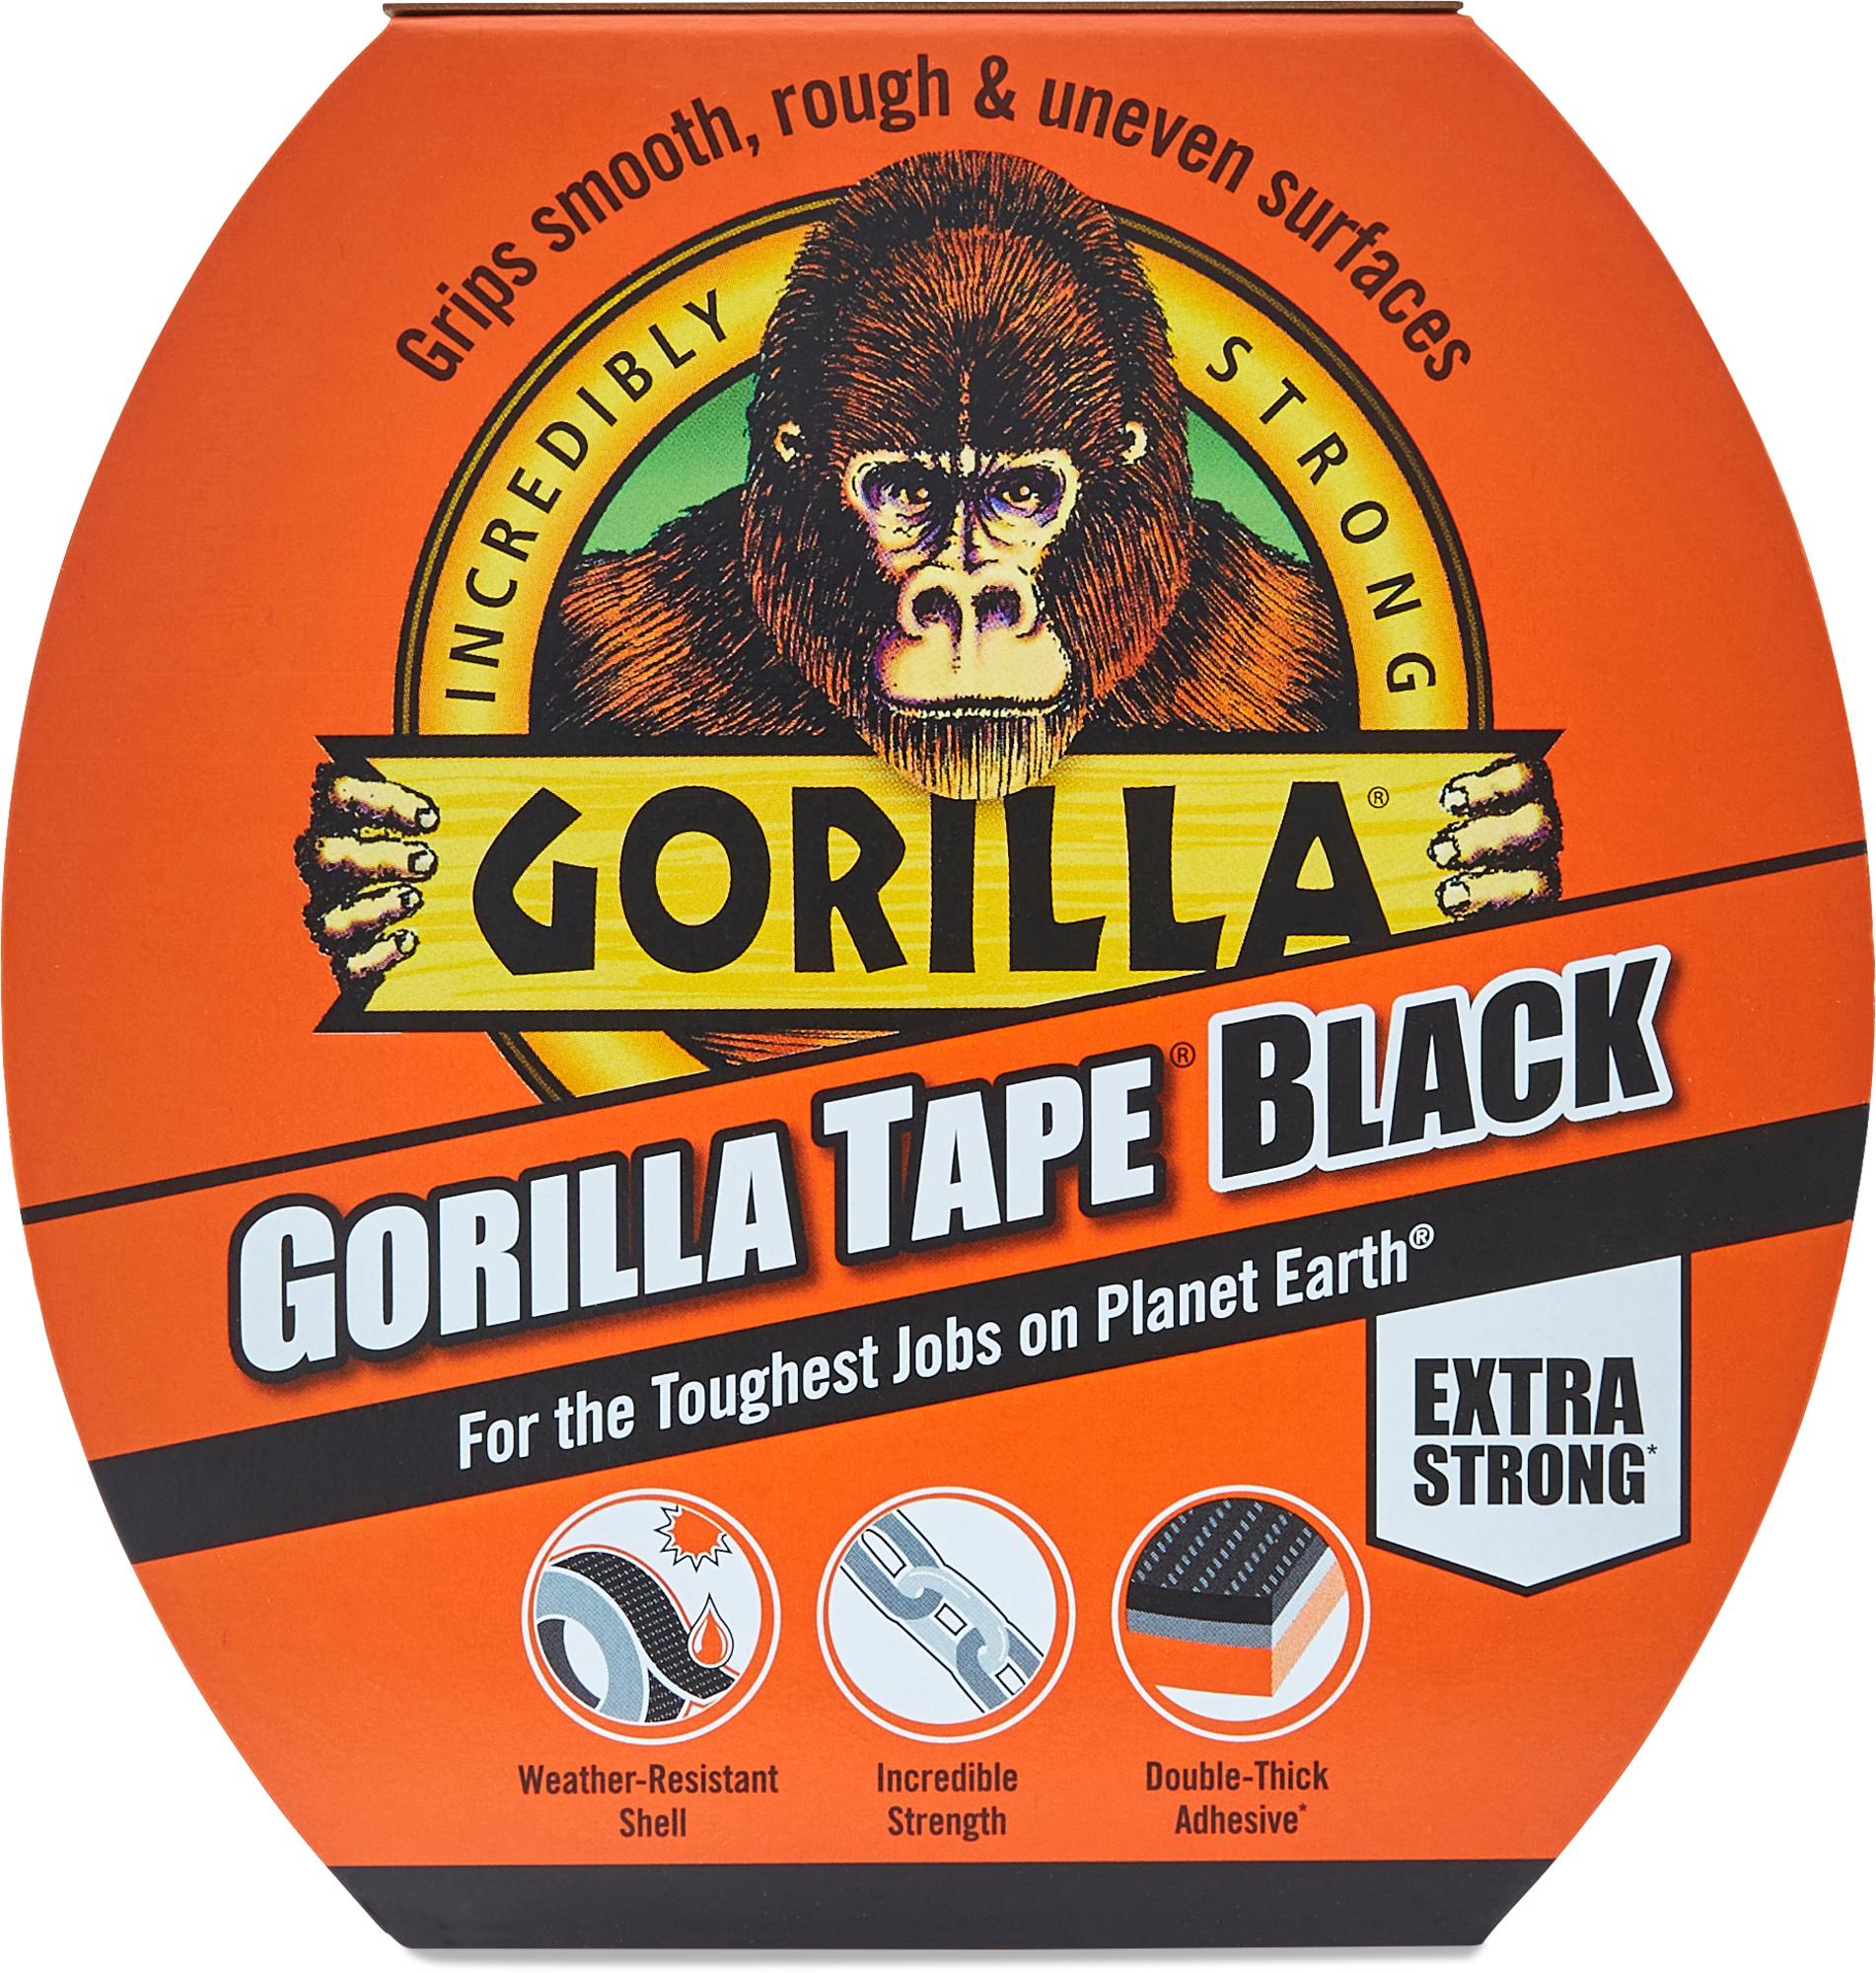 Gorilla Tape 11M